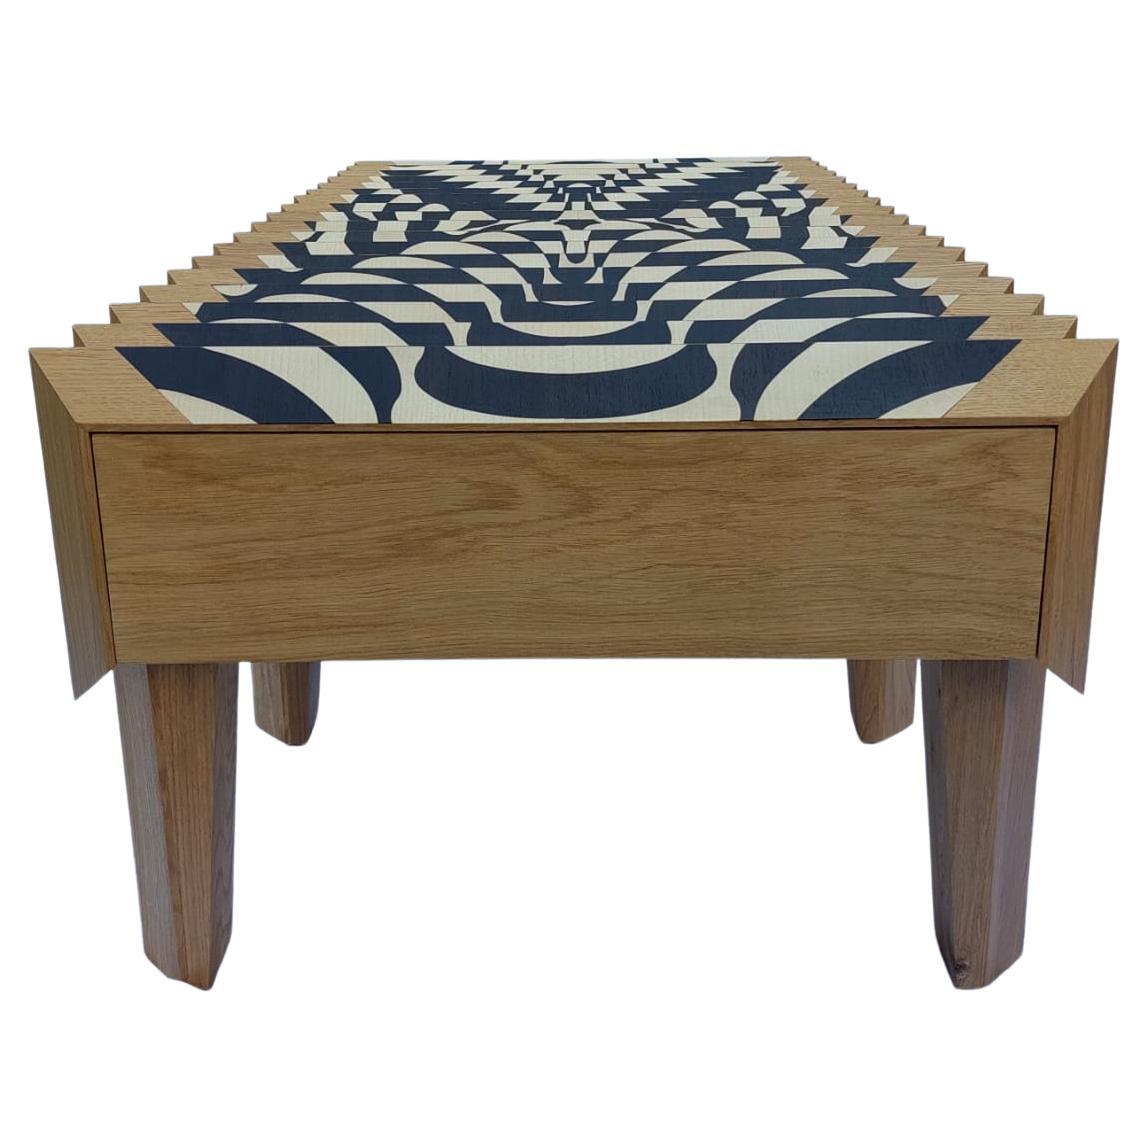 Marqueterie Oak Wood Coffee Table Spirale Pattern The Netherlands By Sordile en vente